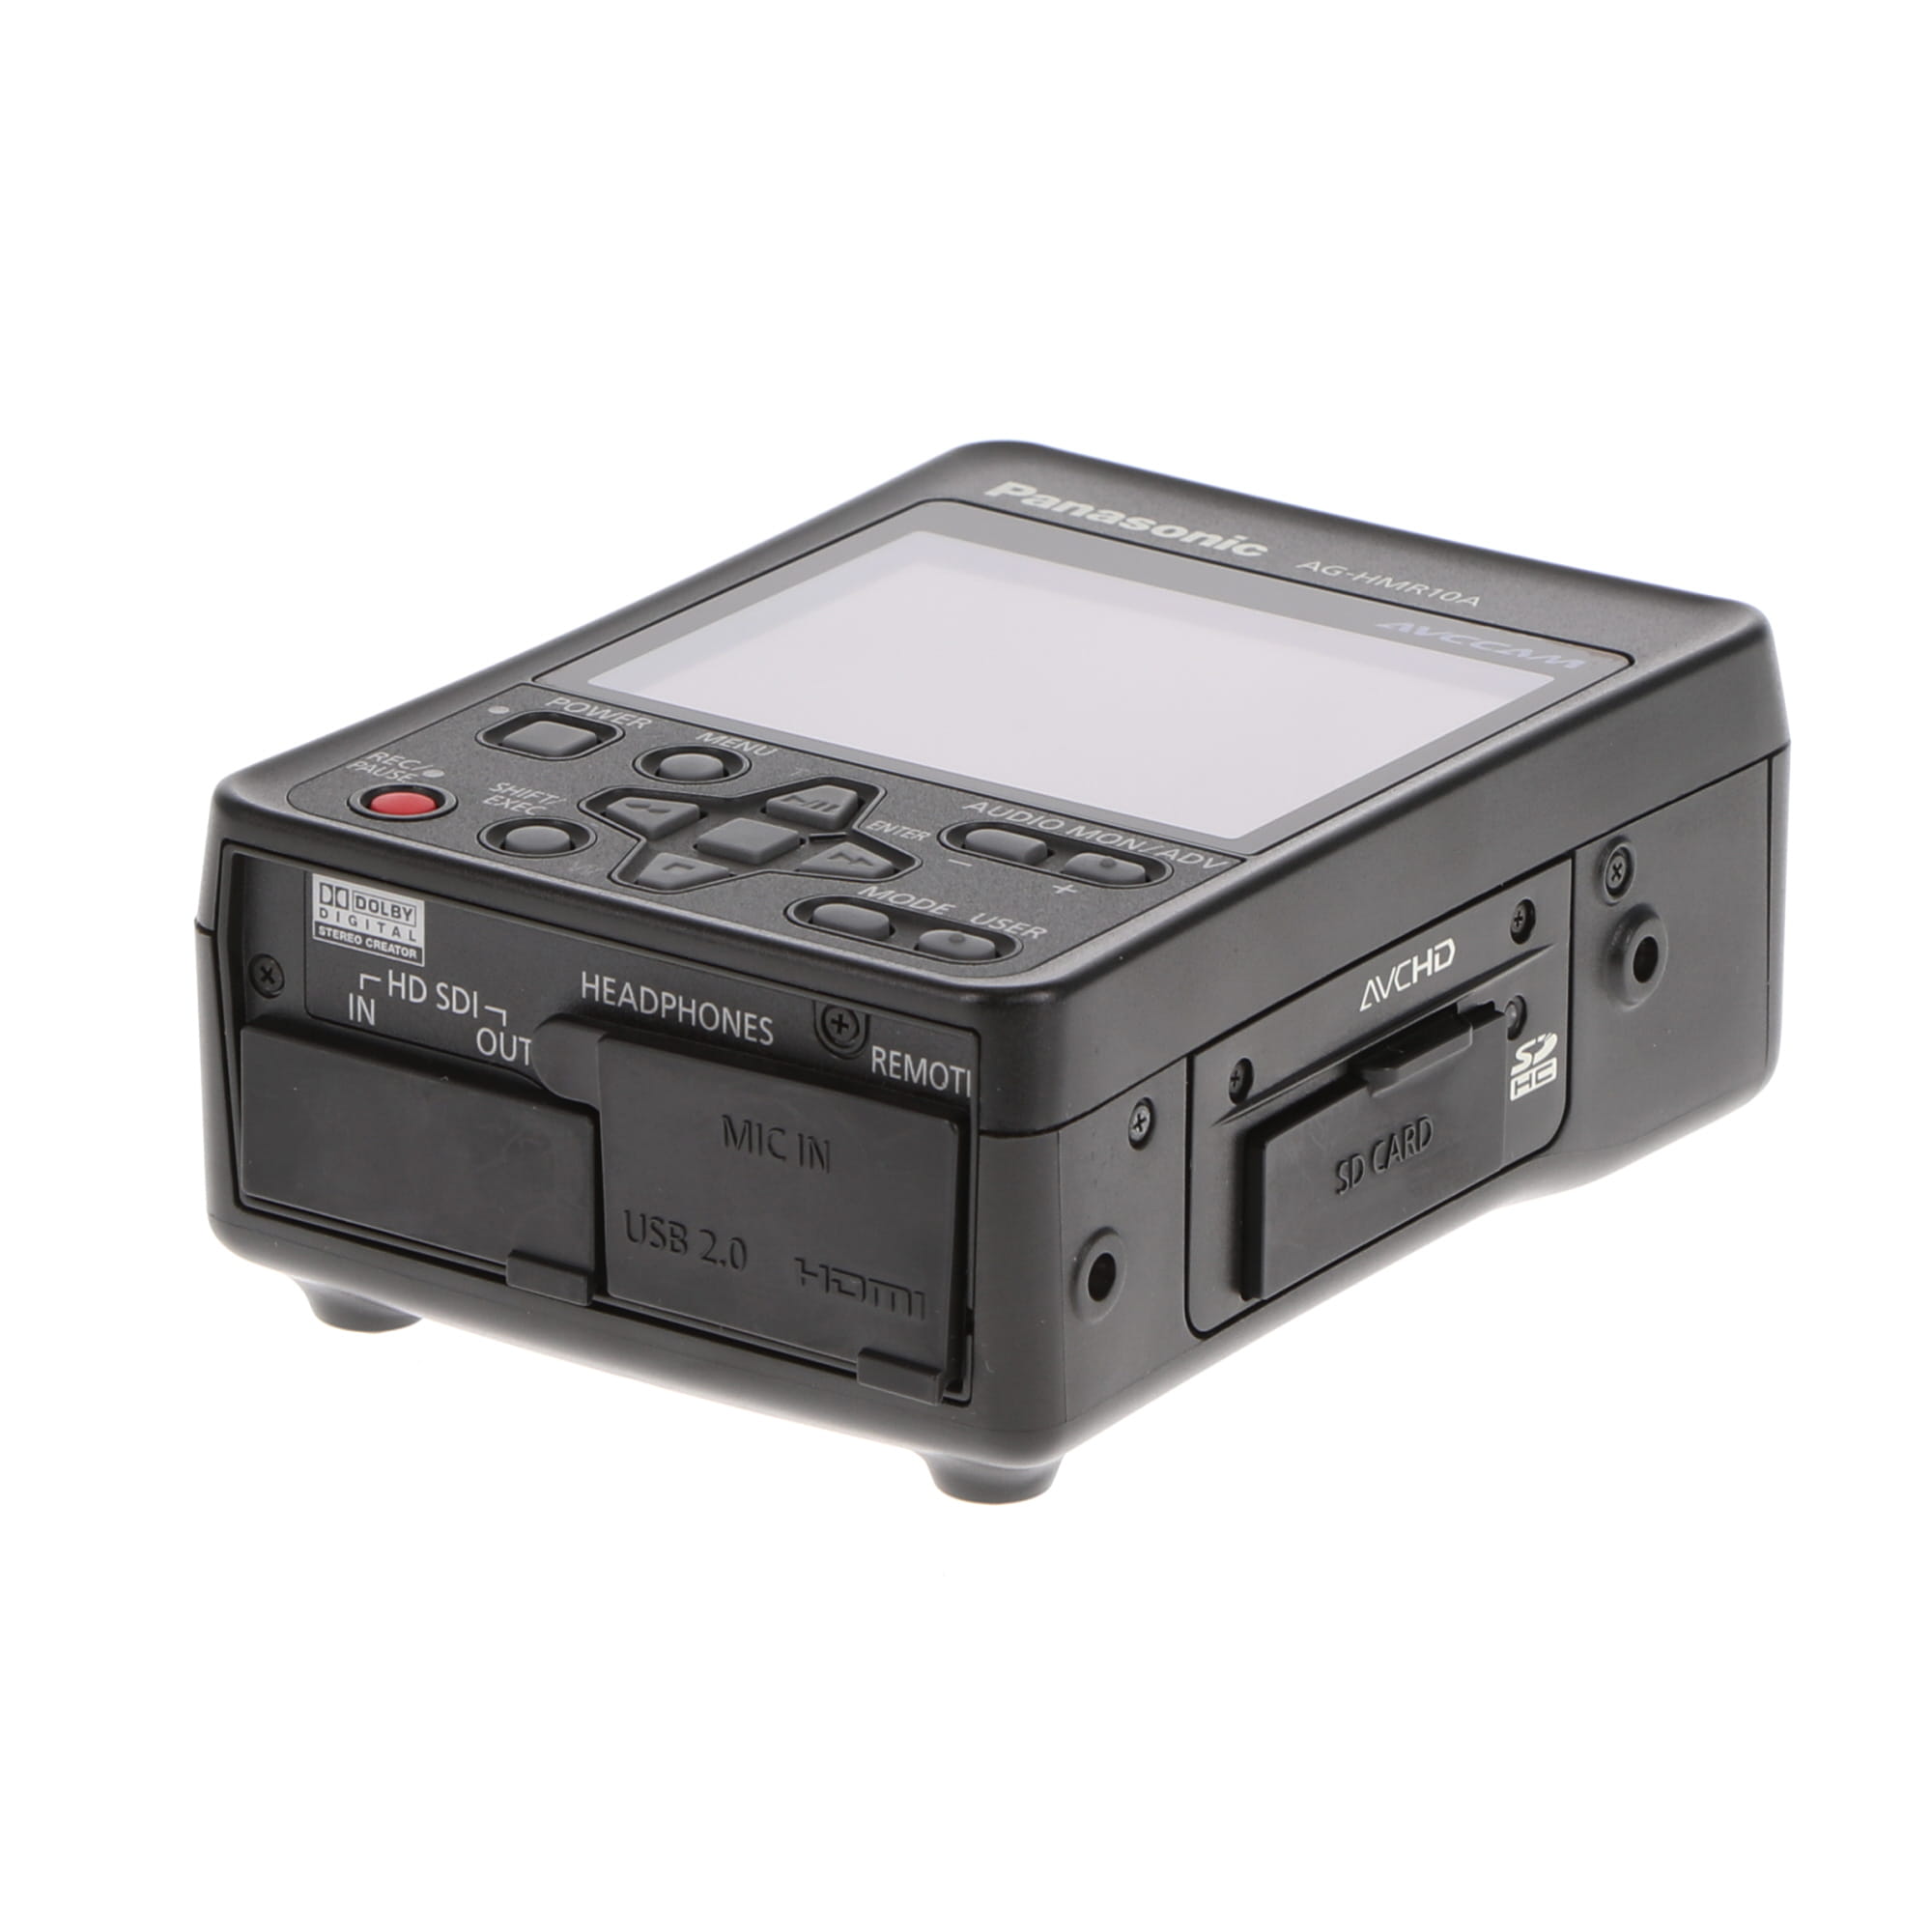 Panasonic AG-HMR10A レコーダー パナソニック 業務用 メモリーカード 